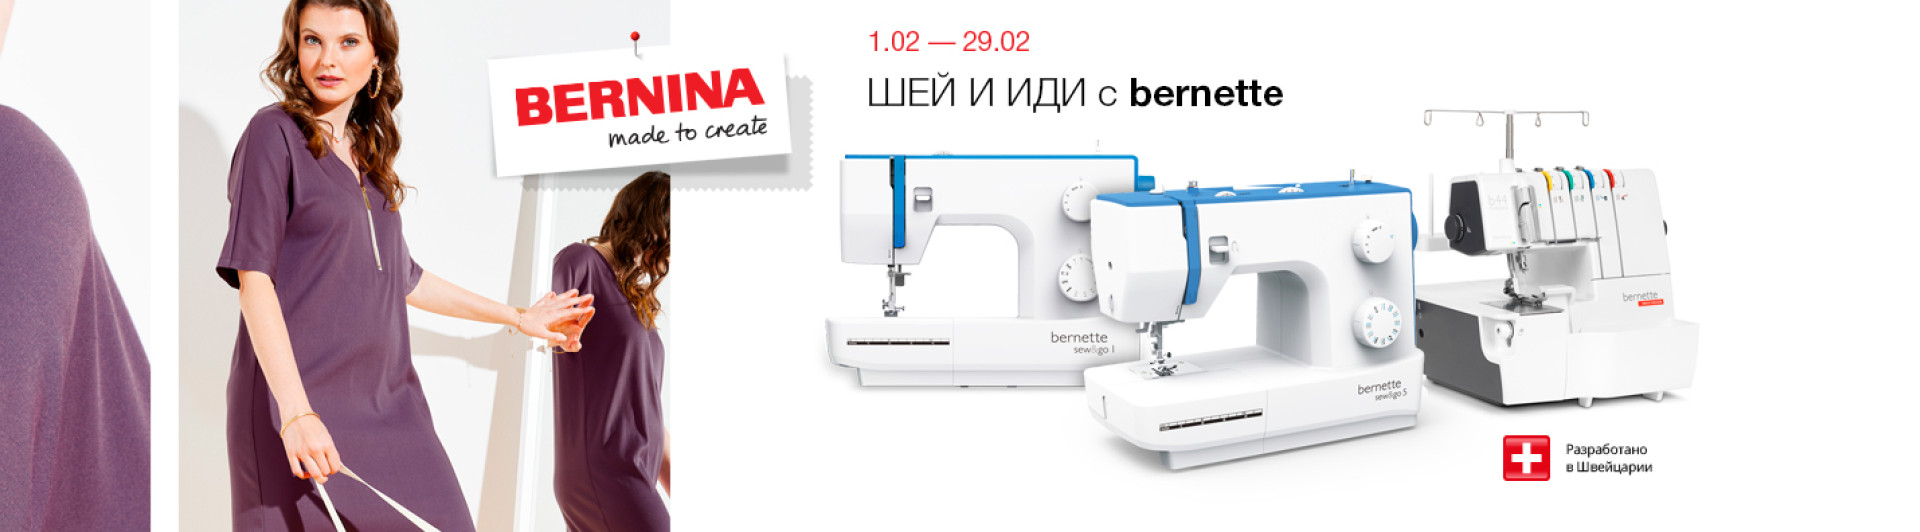 С 1 по 29 февраля скидки на избранное швейное оборудование bernette.